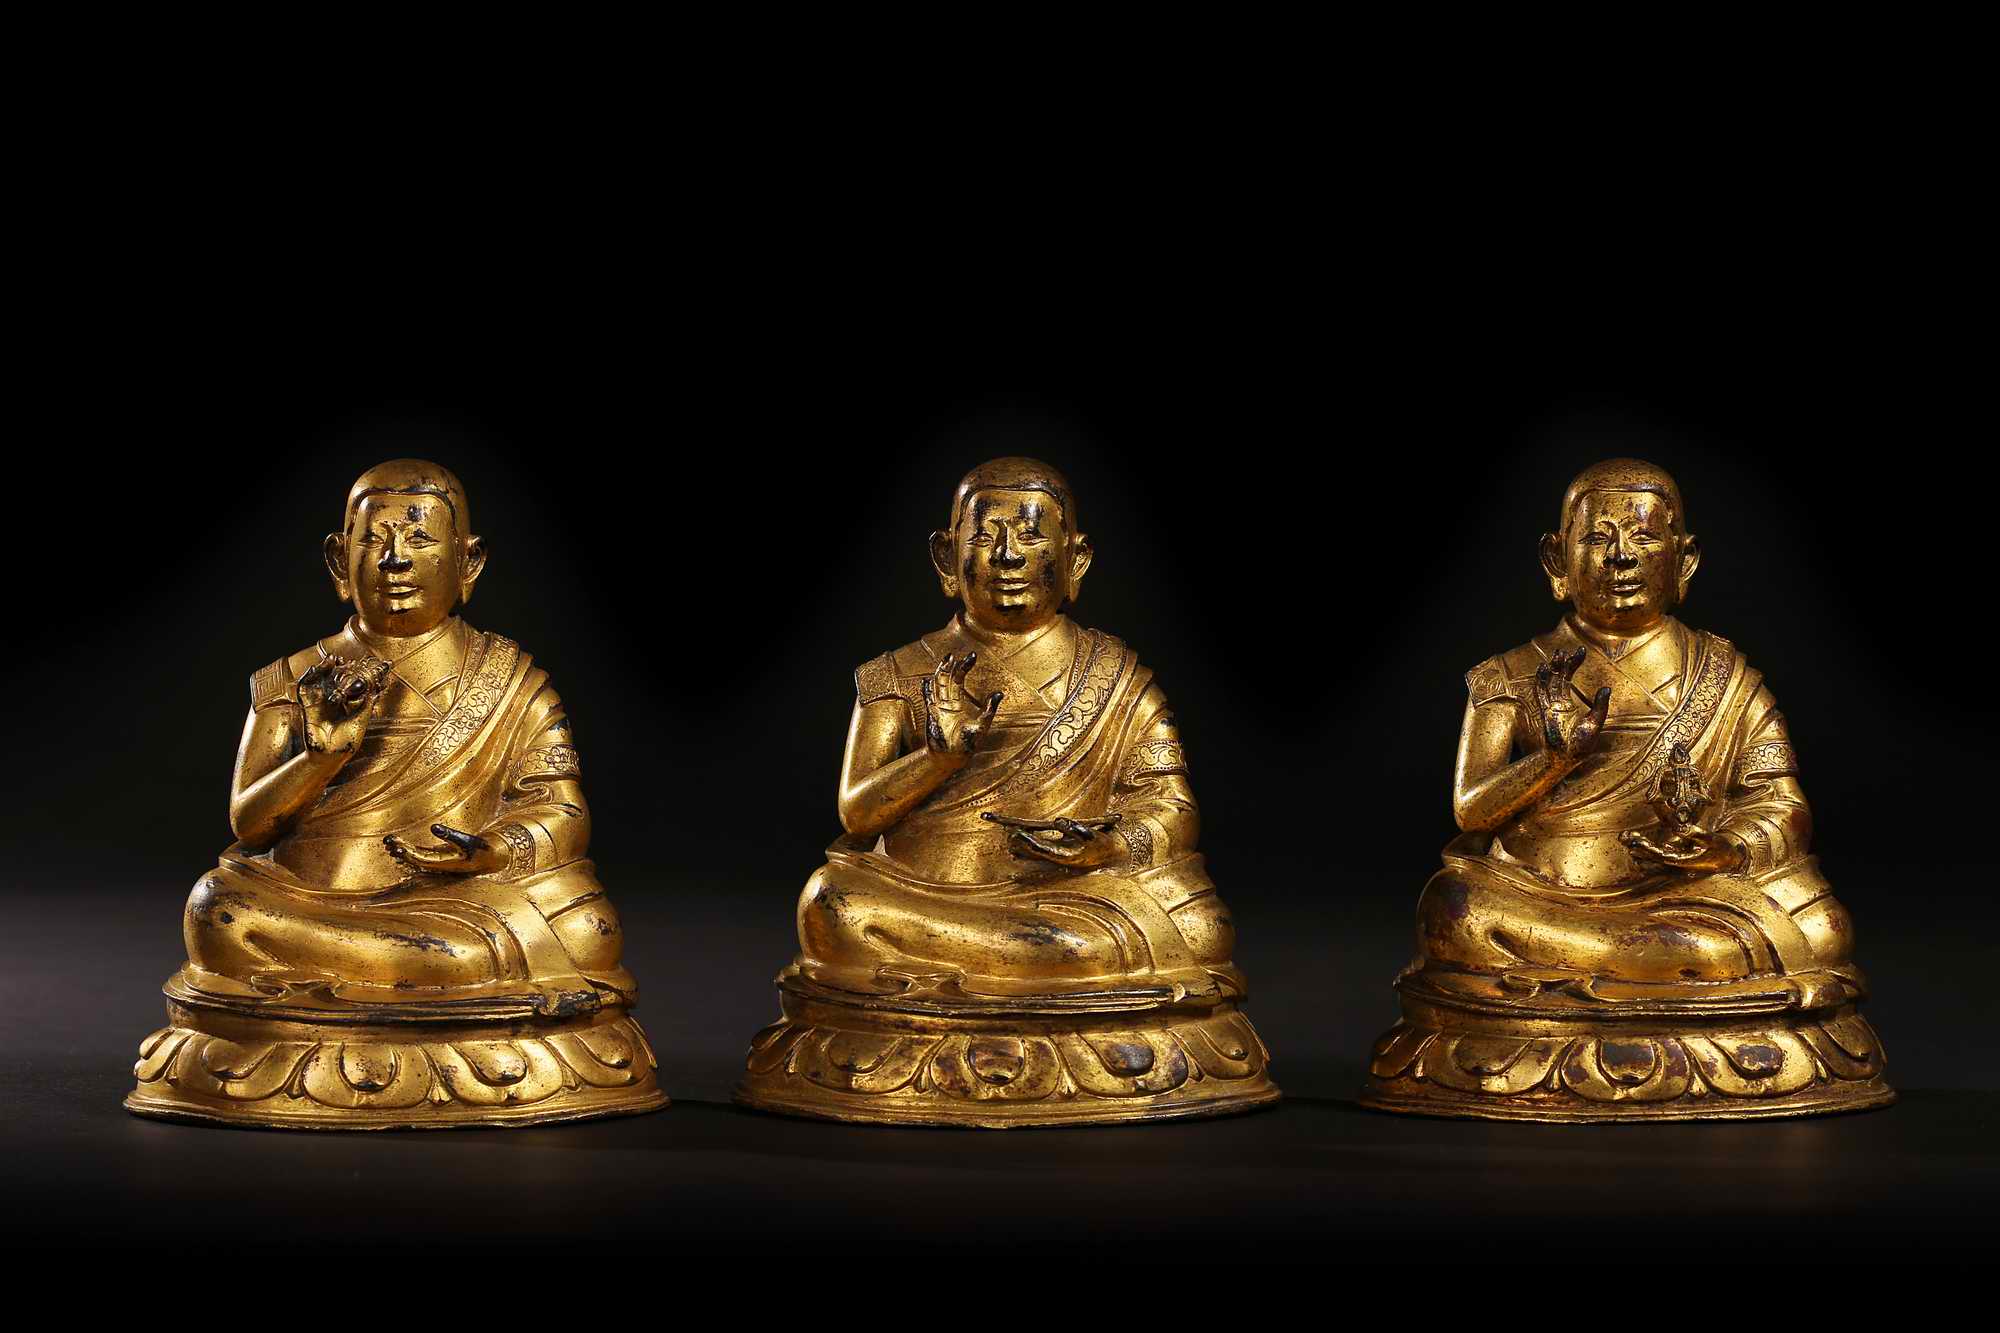 装裱形式：西藏 17世纪上师三件一组